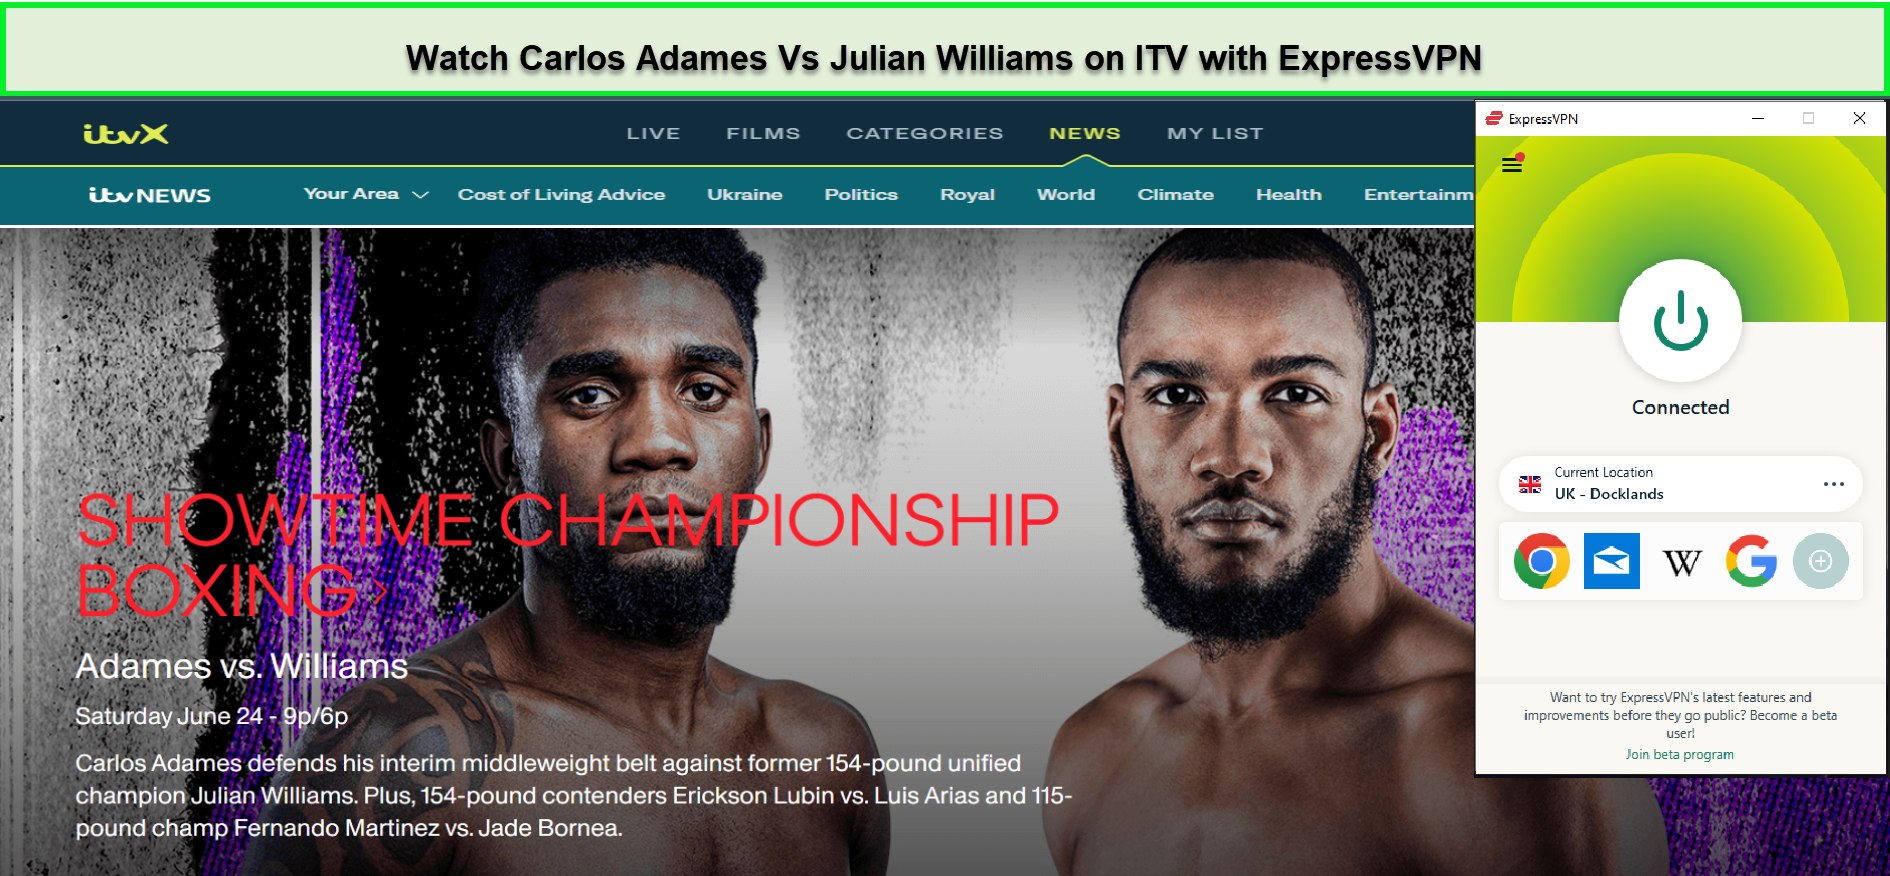 Watch-Carlos-Adames-Vs-Julian-Williams-outside-UK-on-ITV-with-ExpressVPN